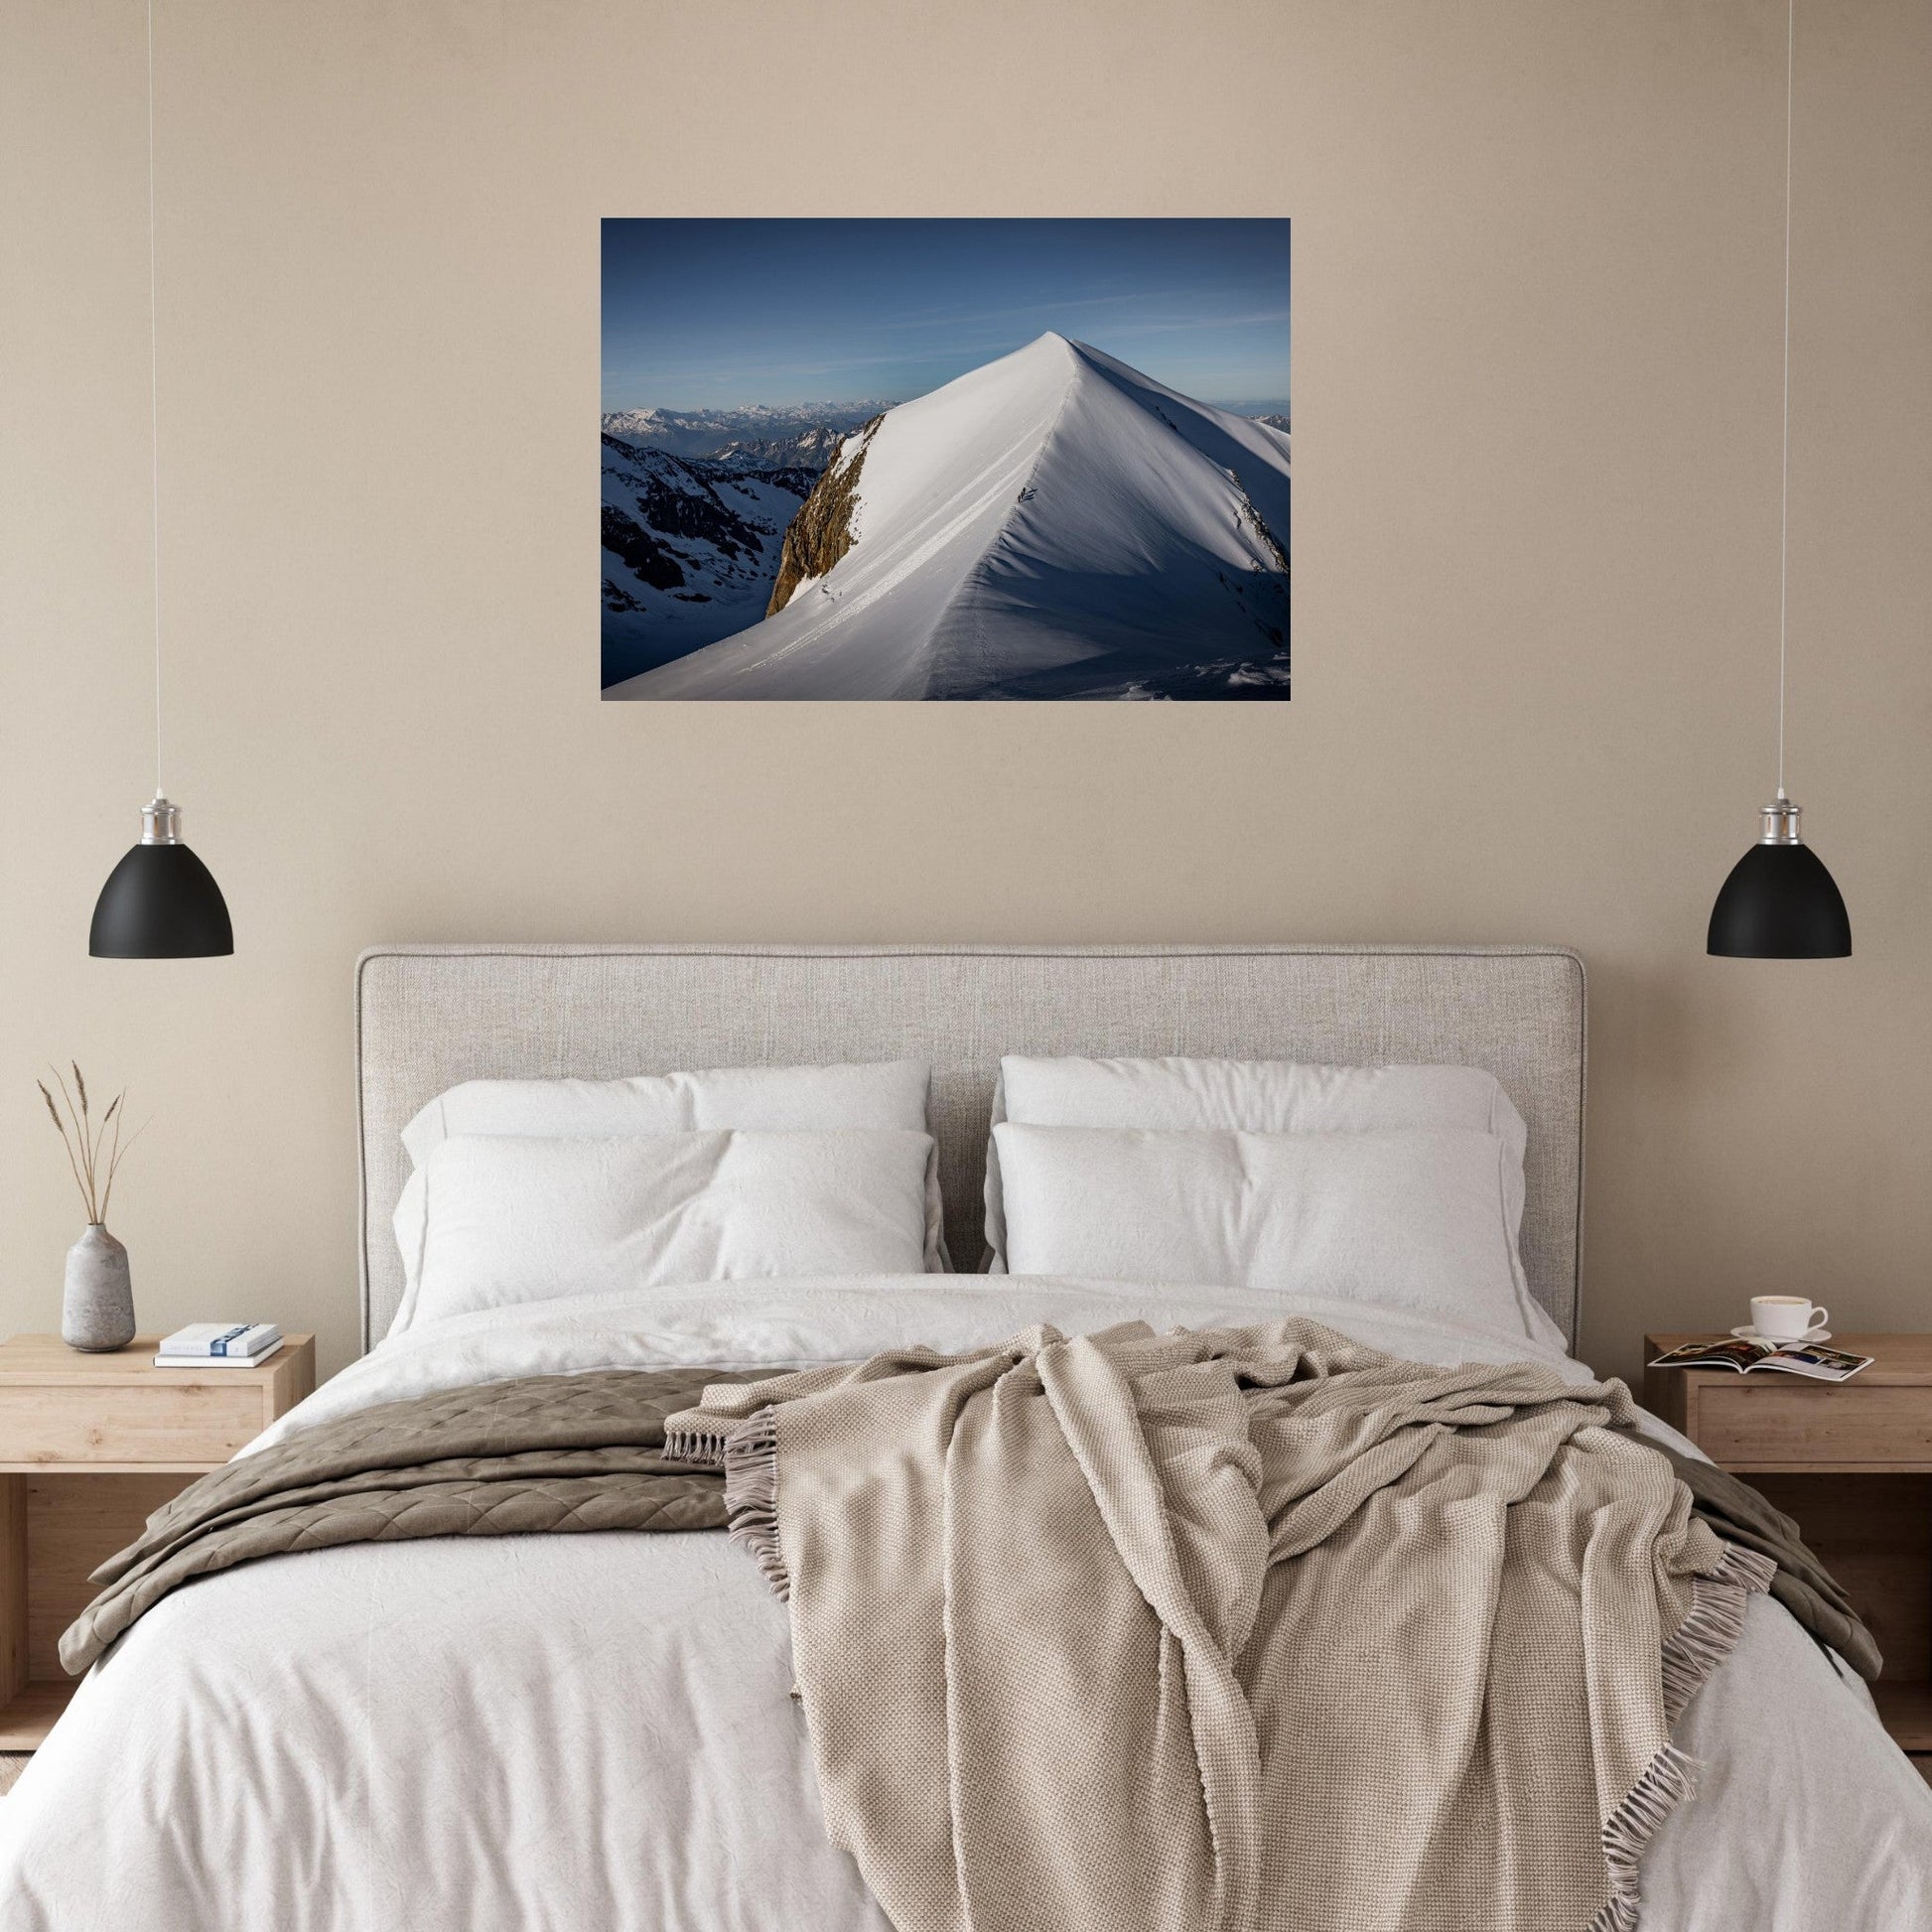 Photo du Dome de Miage, Massif du Mont-Blanc - Tableau photo alu montagne